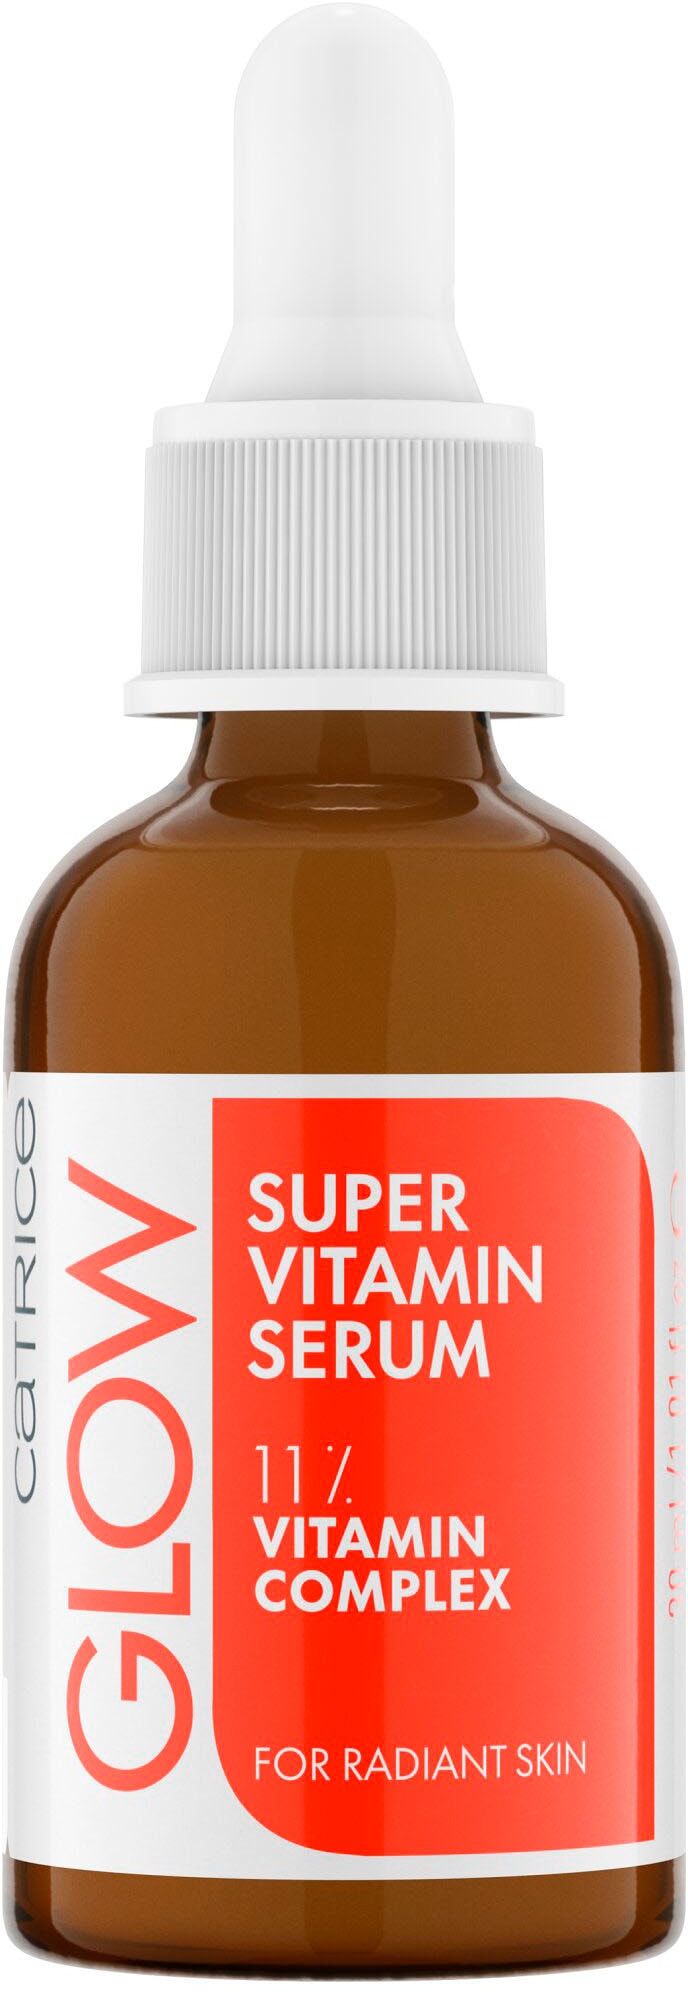 Catrice Gesichtsserum »Glow Super Vitamin Serum« online kaufen